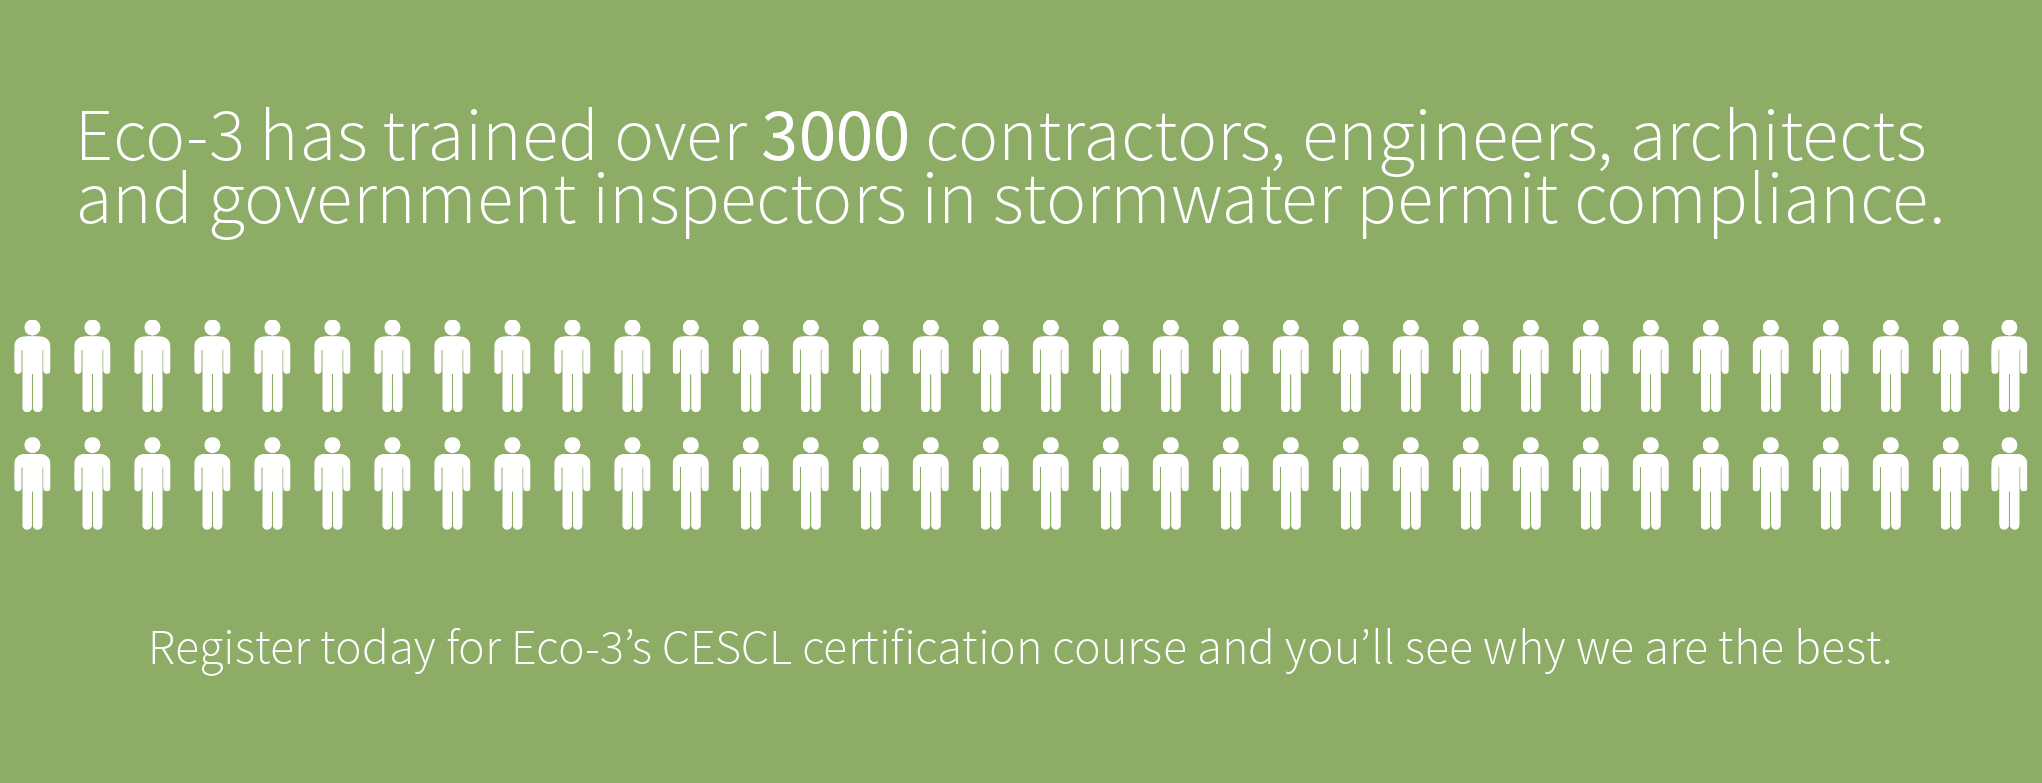 Eco-3 CESCL certifiction training